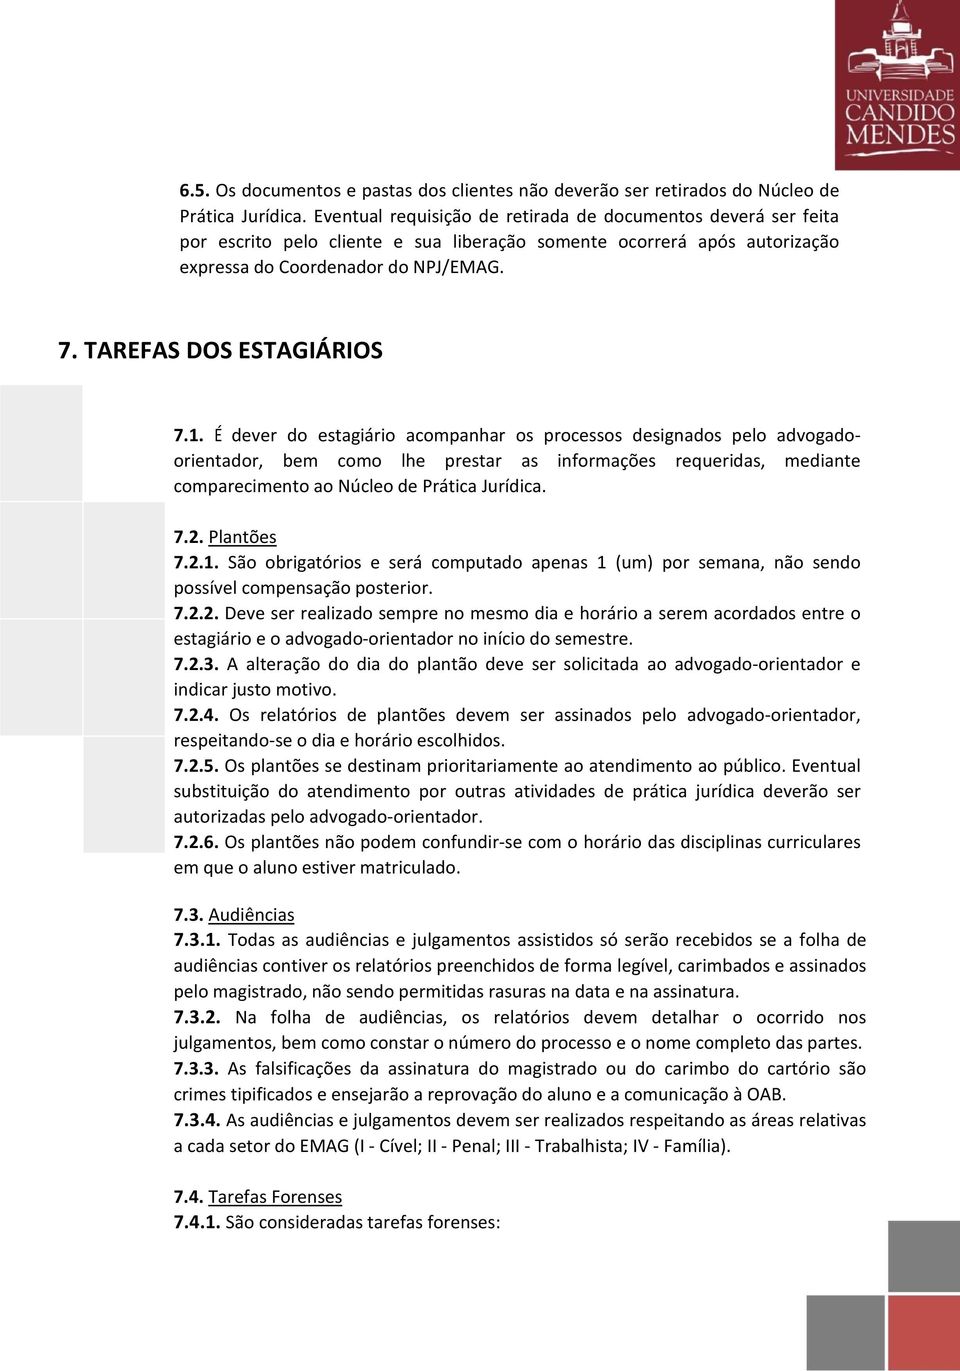 TAREFAS DOS ESTAGIÁRIOS 7.1.